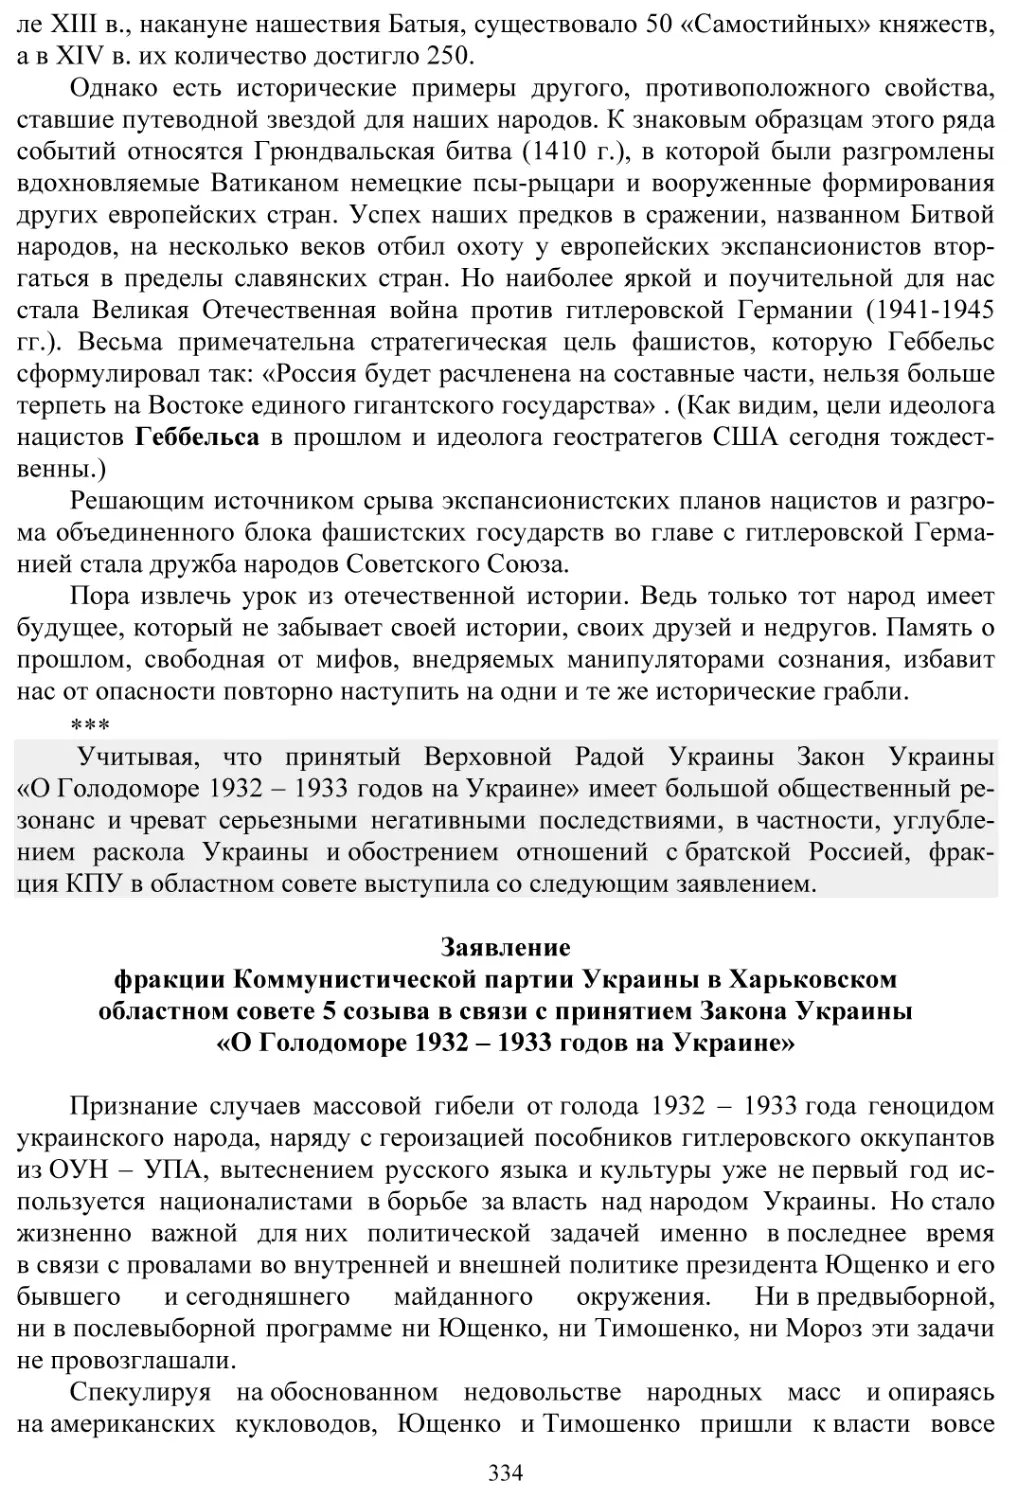 Заявление фракции КПУ в Харьковском областном совете в связи с принятием Закона Украины «О Голодоморе 1932-1933 годов на Украине»